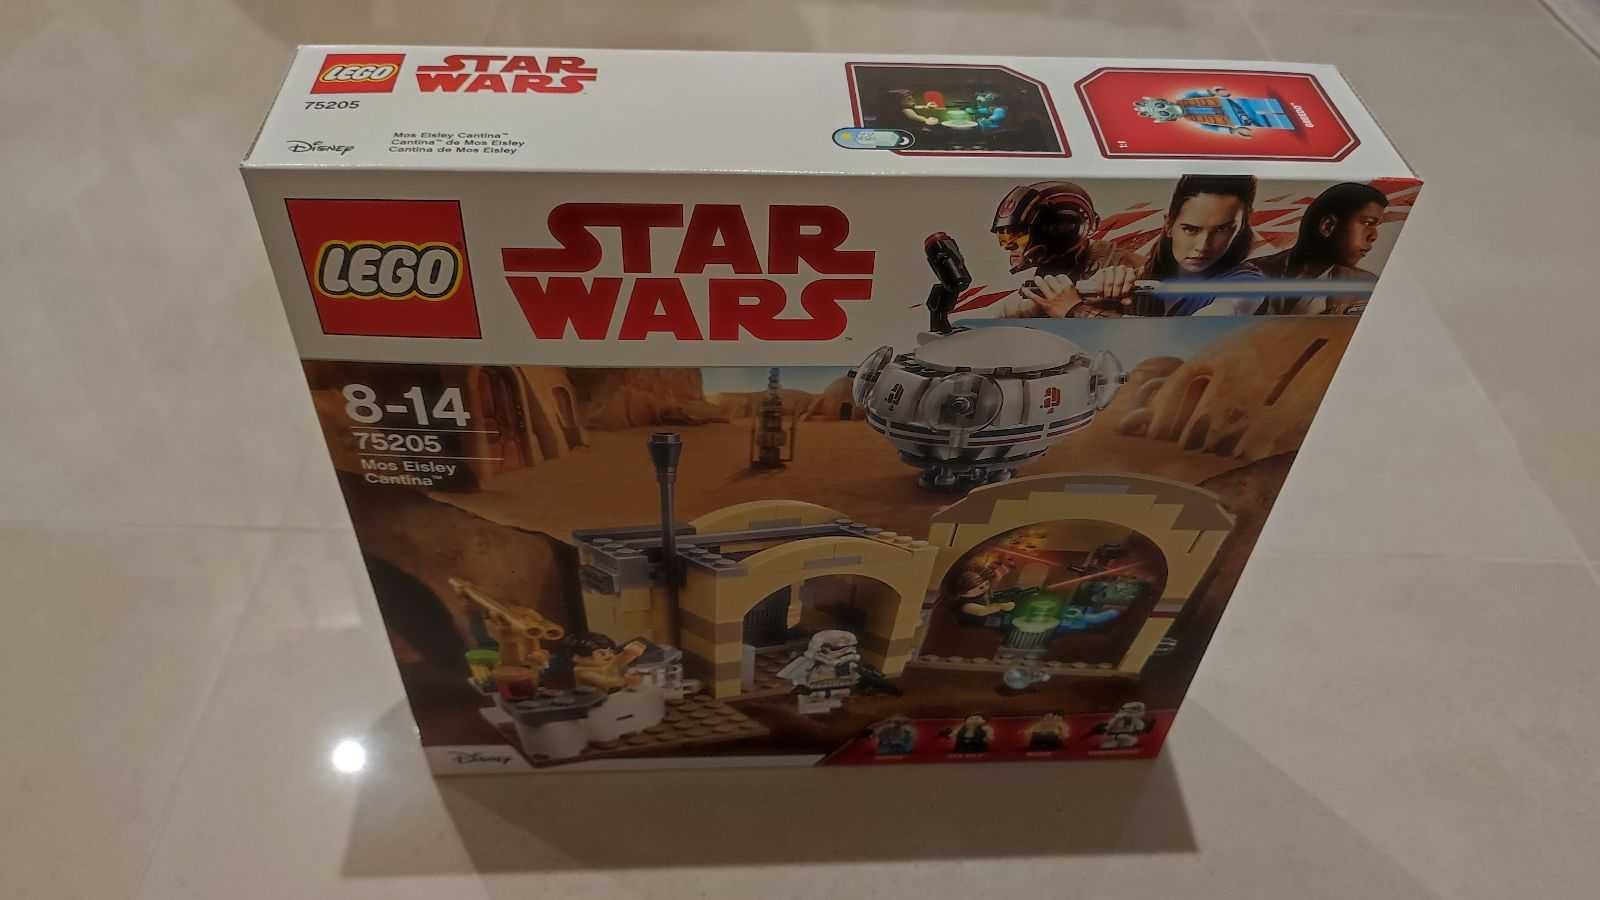 Zestaw LEGO Star Wars 75205 - Kantyna Mos Eisley. NOWY !!!